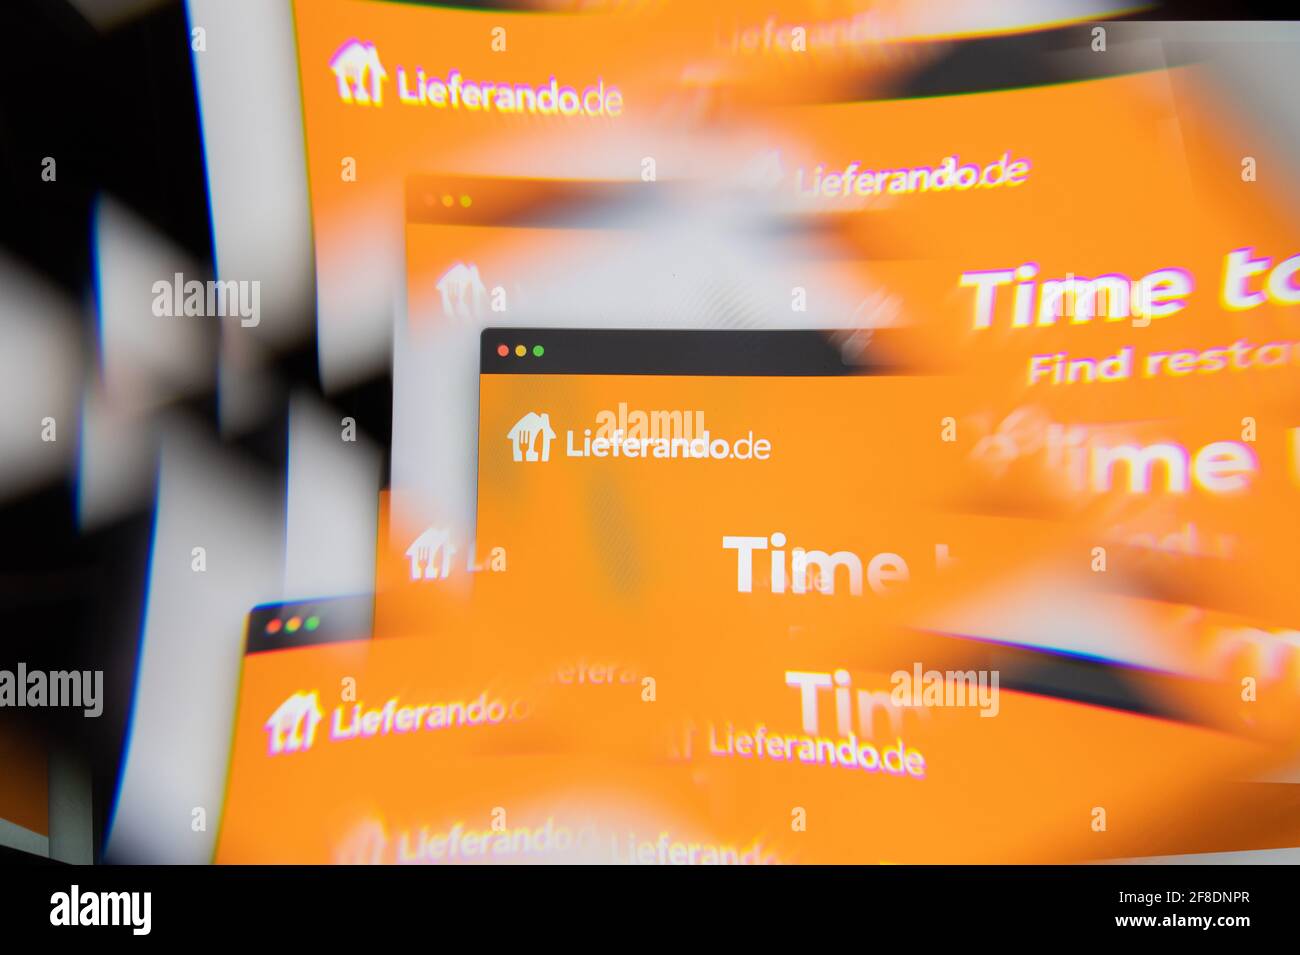 Mailand, Italien - 10. APRIL 2021: Lieferando lieferando.de-Logo auf dem Laptop-Bildschirm durch ein optisches Prisma gesehen. Illustratives redaktionelles Bild von Liefera Stockfoto